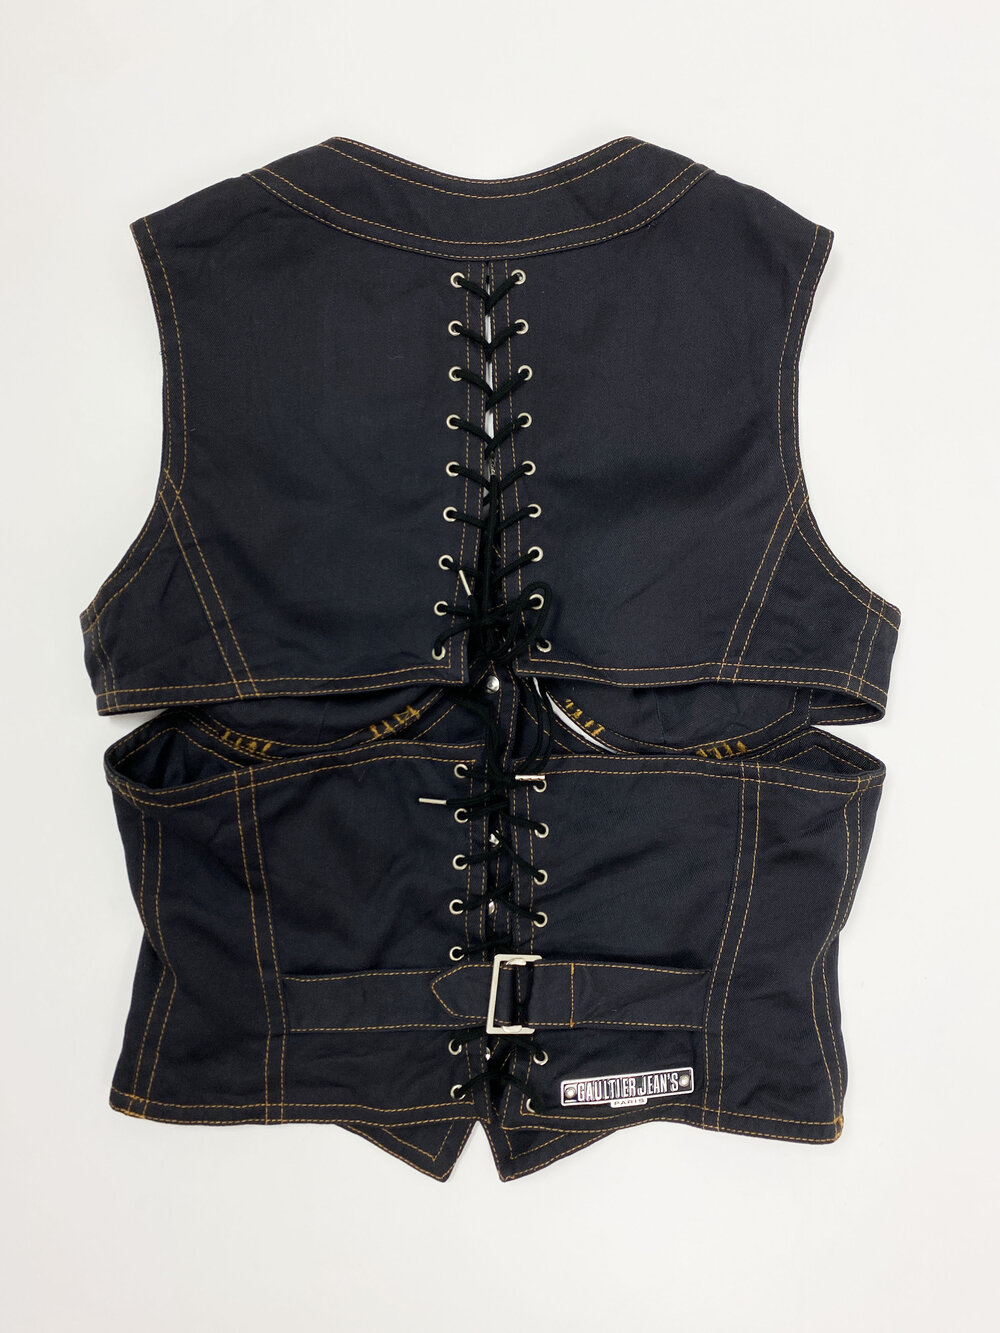 Jean Paul Gaultier cutout corset top — JAMES VELORIA